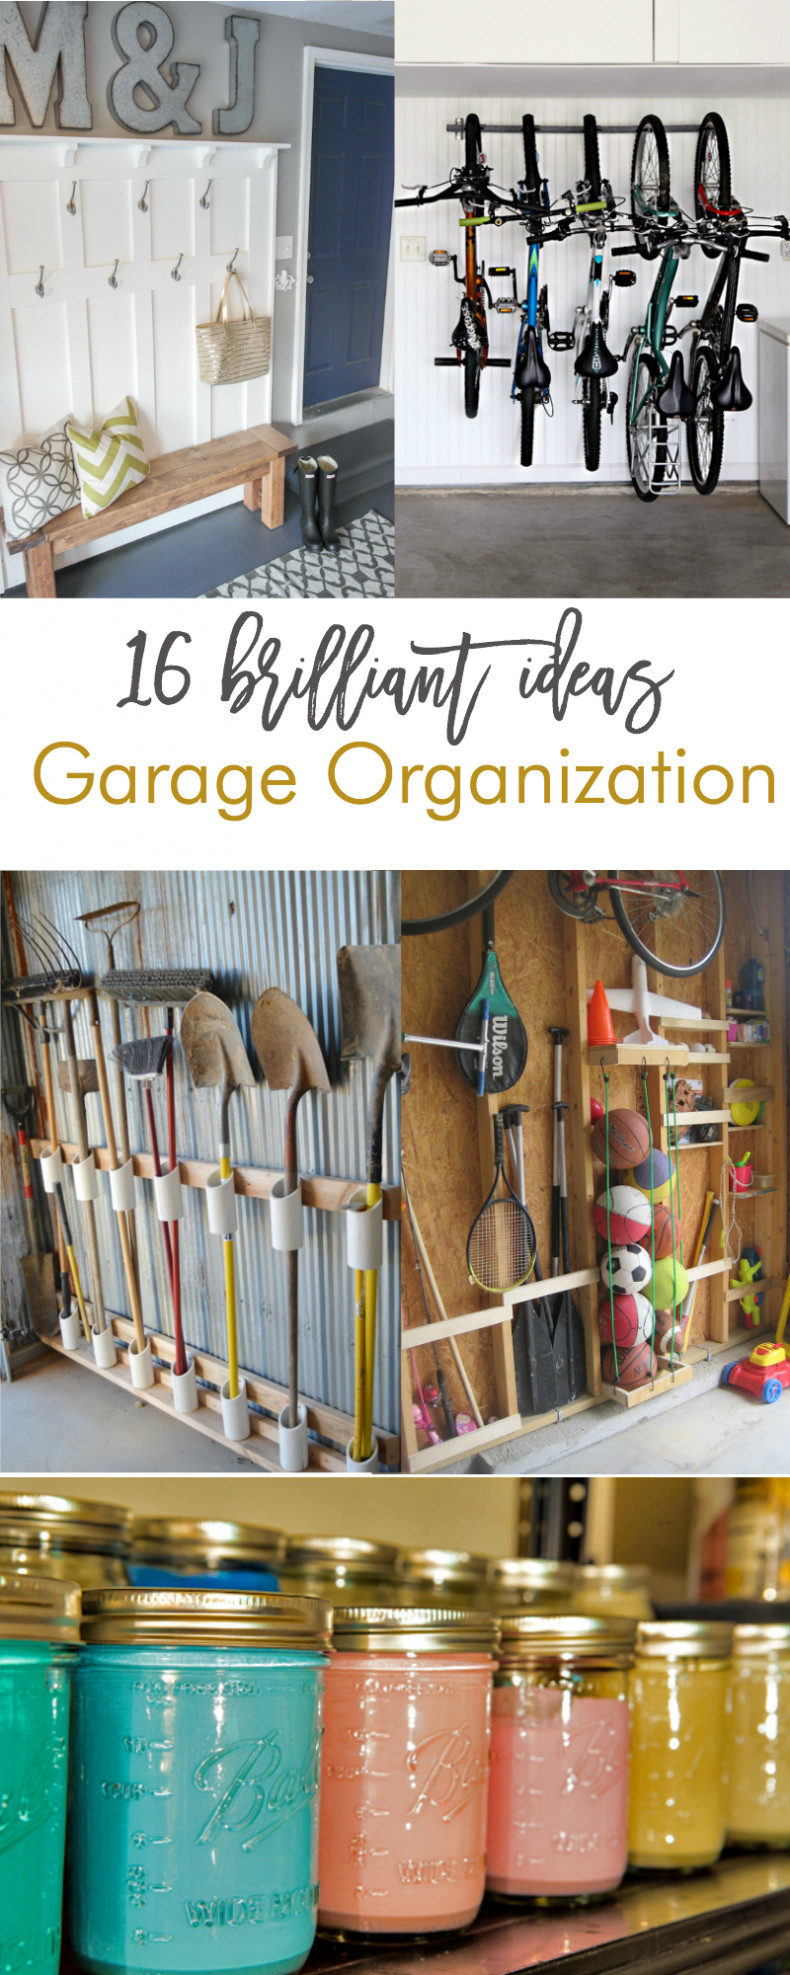 DIY Workshop Plans
 16 Brilliant DIY Garage Organization Ideas